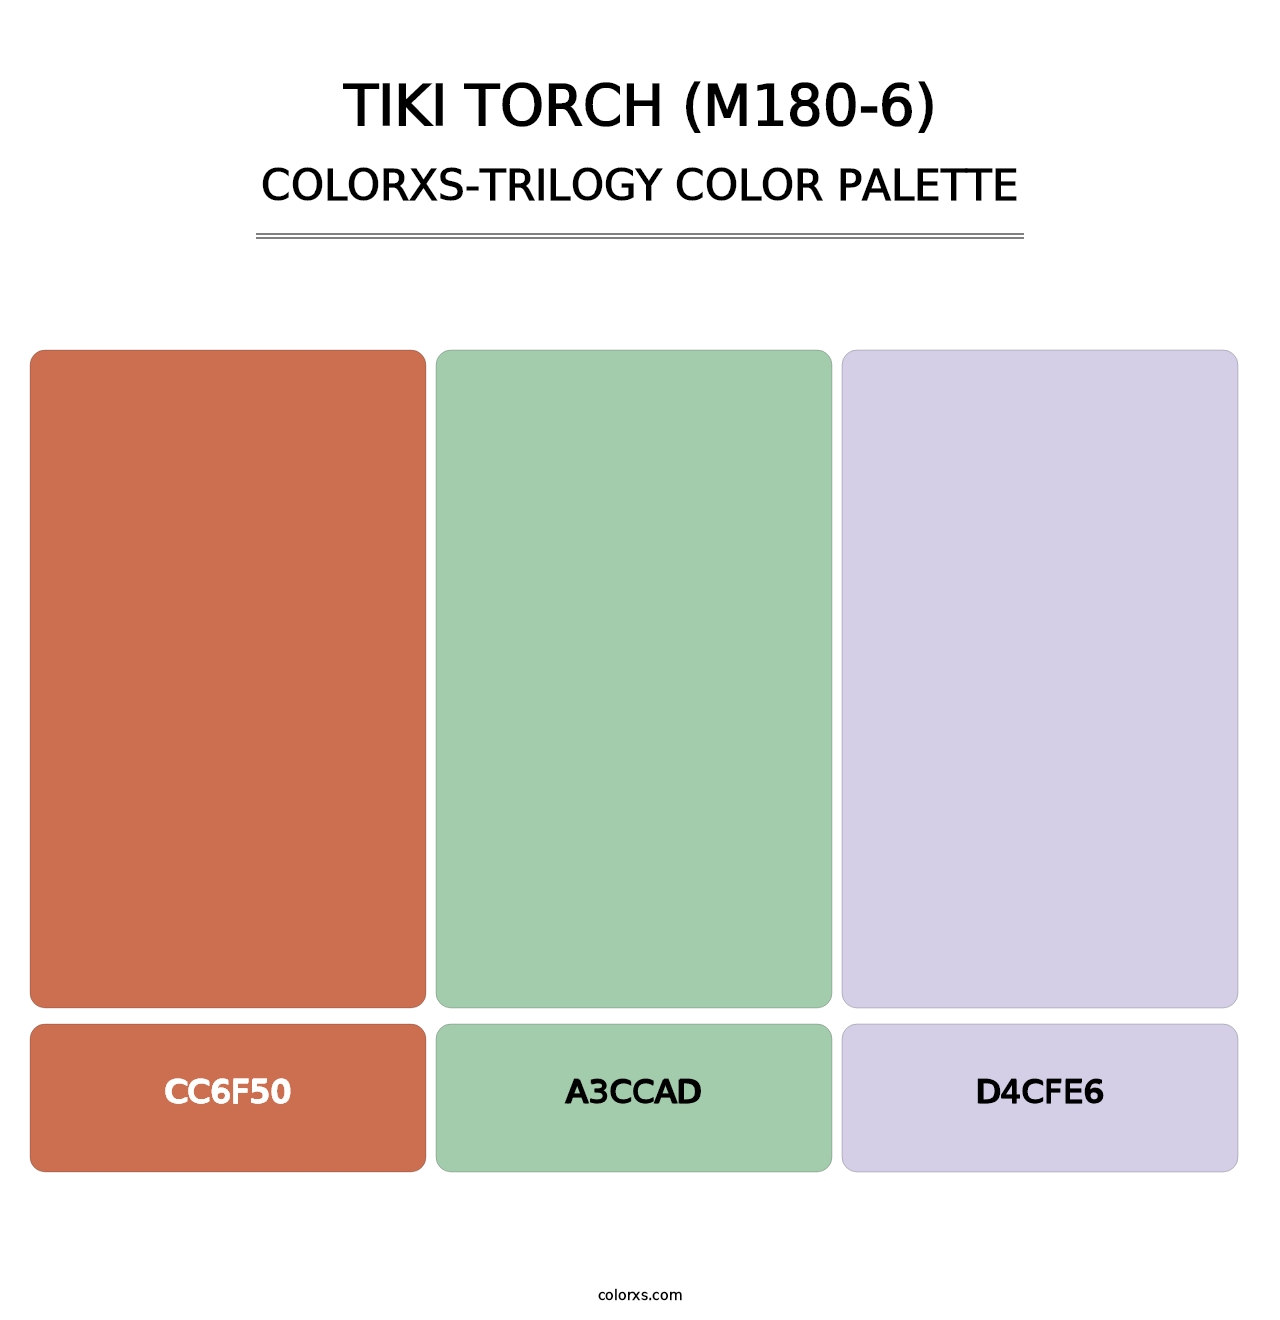 Tiki Torch (M180-6) - Colorxs Trilogy Palette